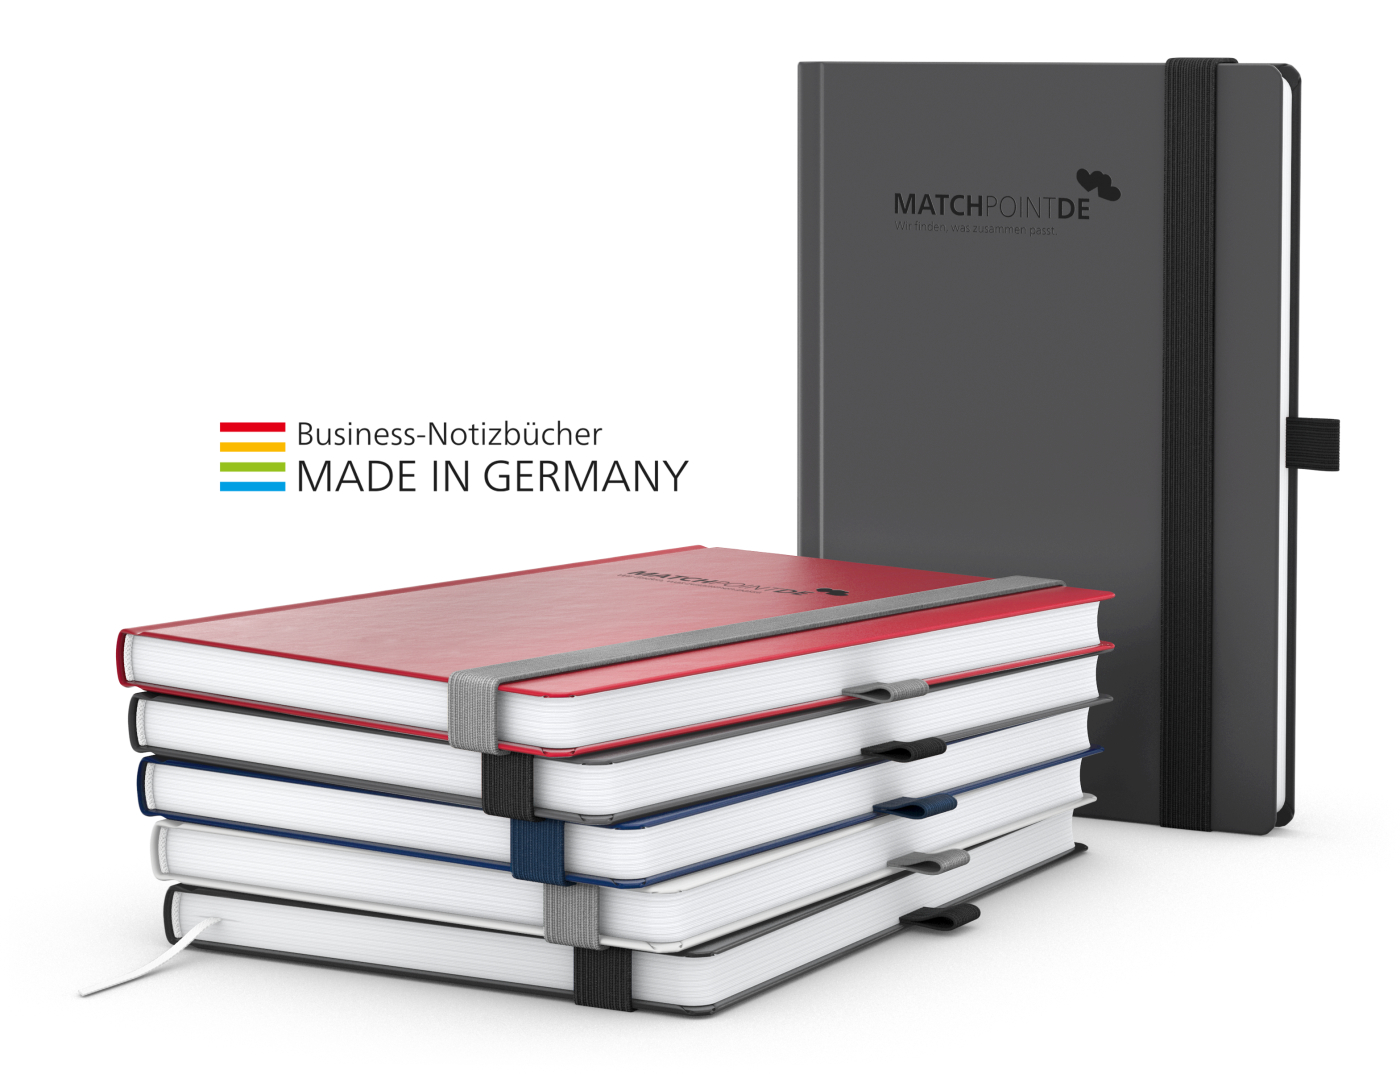 Notizbuch Vision-Book White Bestseller A5, rot inkl. Prägung schwarz-glänzend